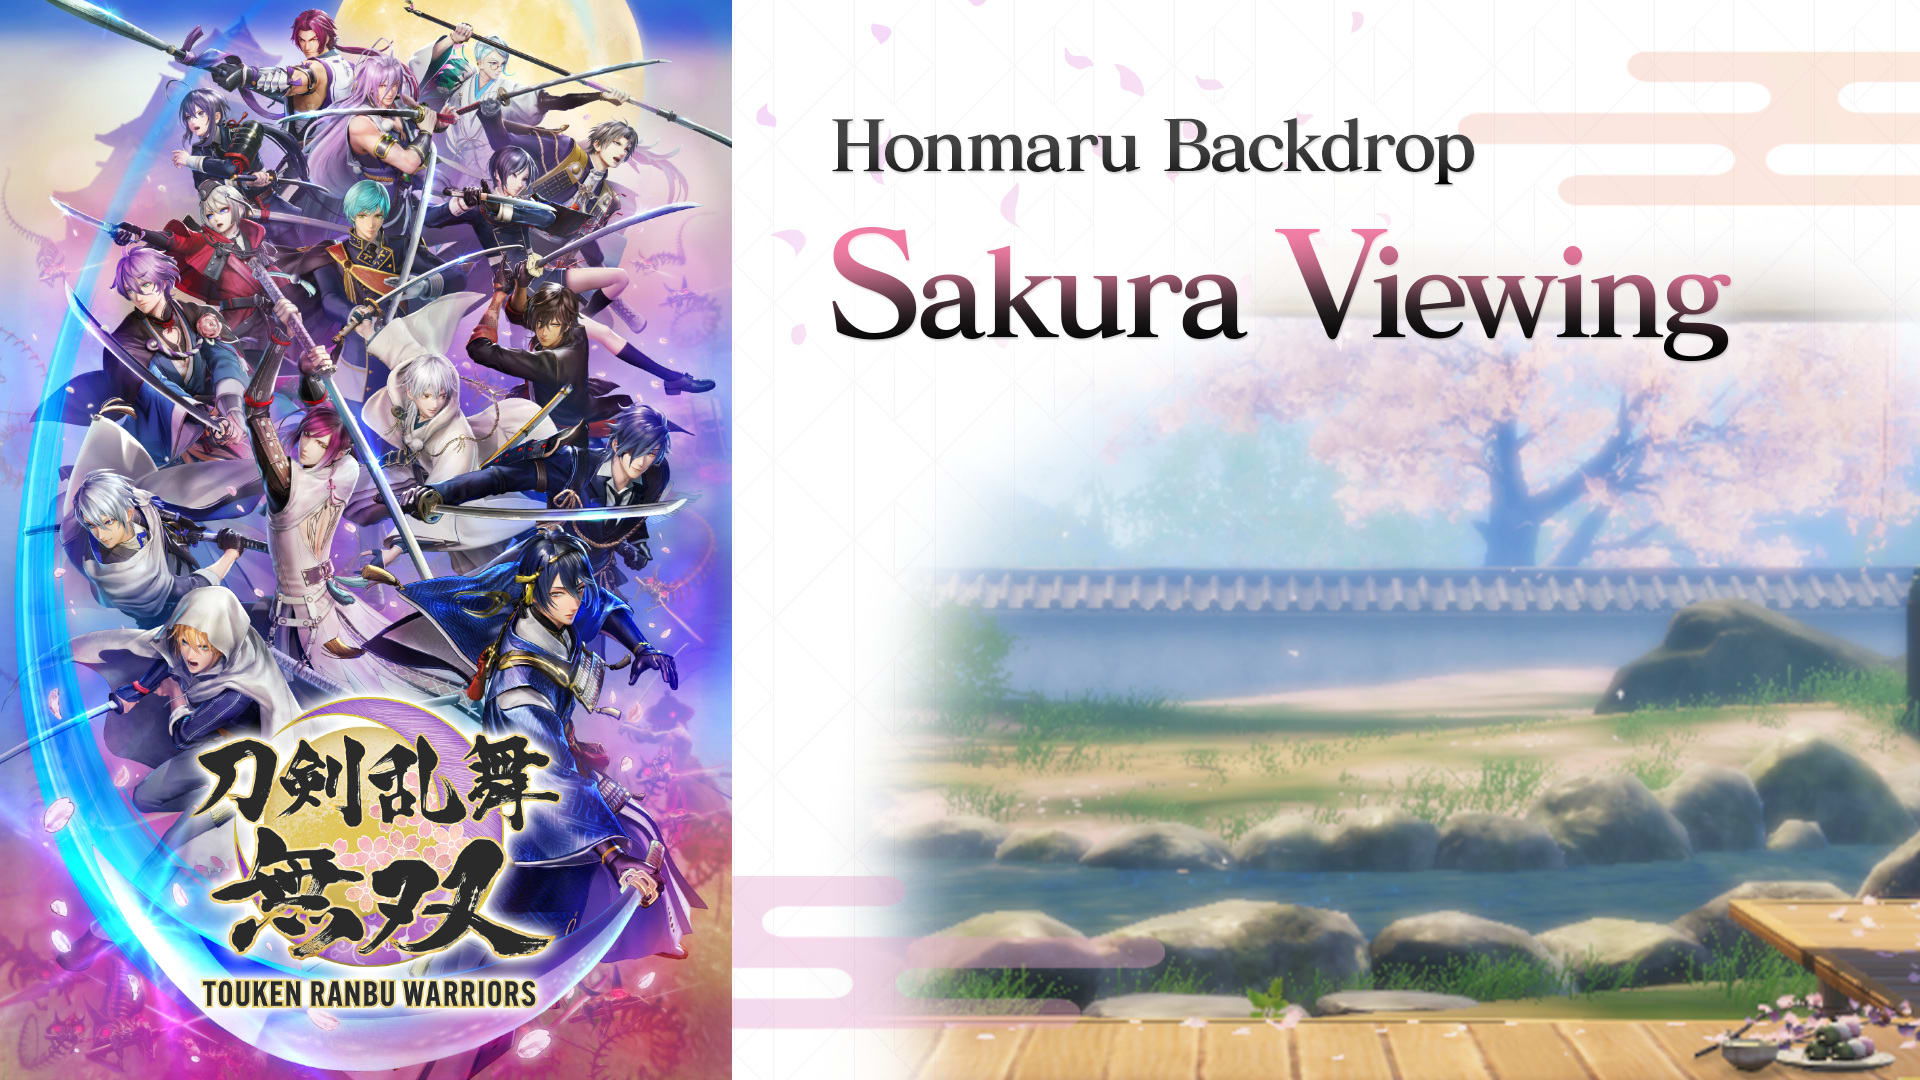 Honmaru Backdrop "Sakura Viewing" 1